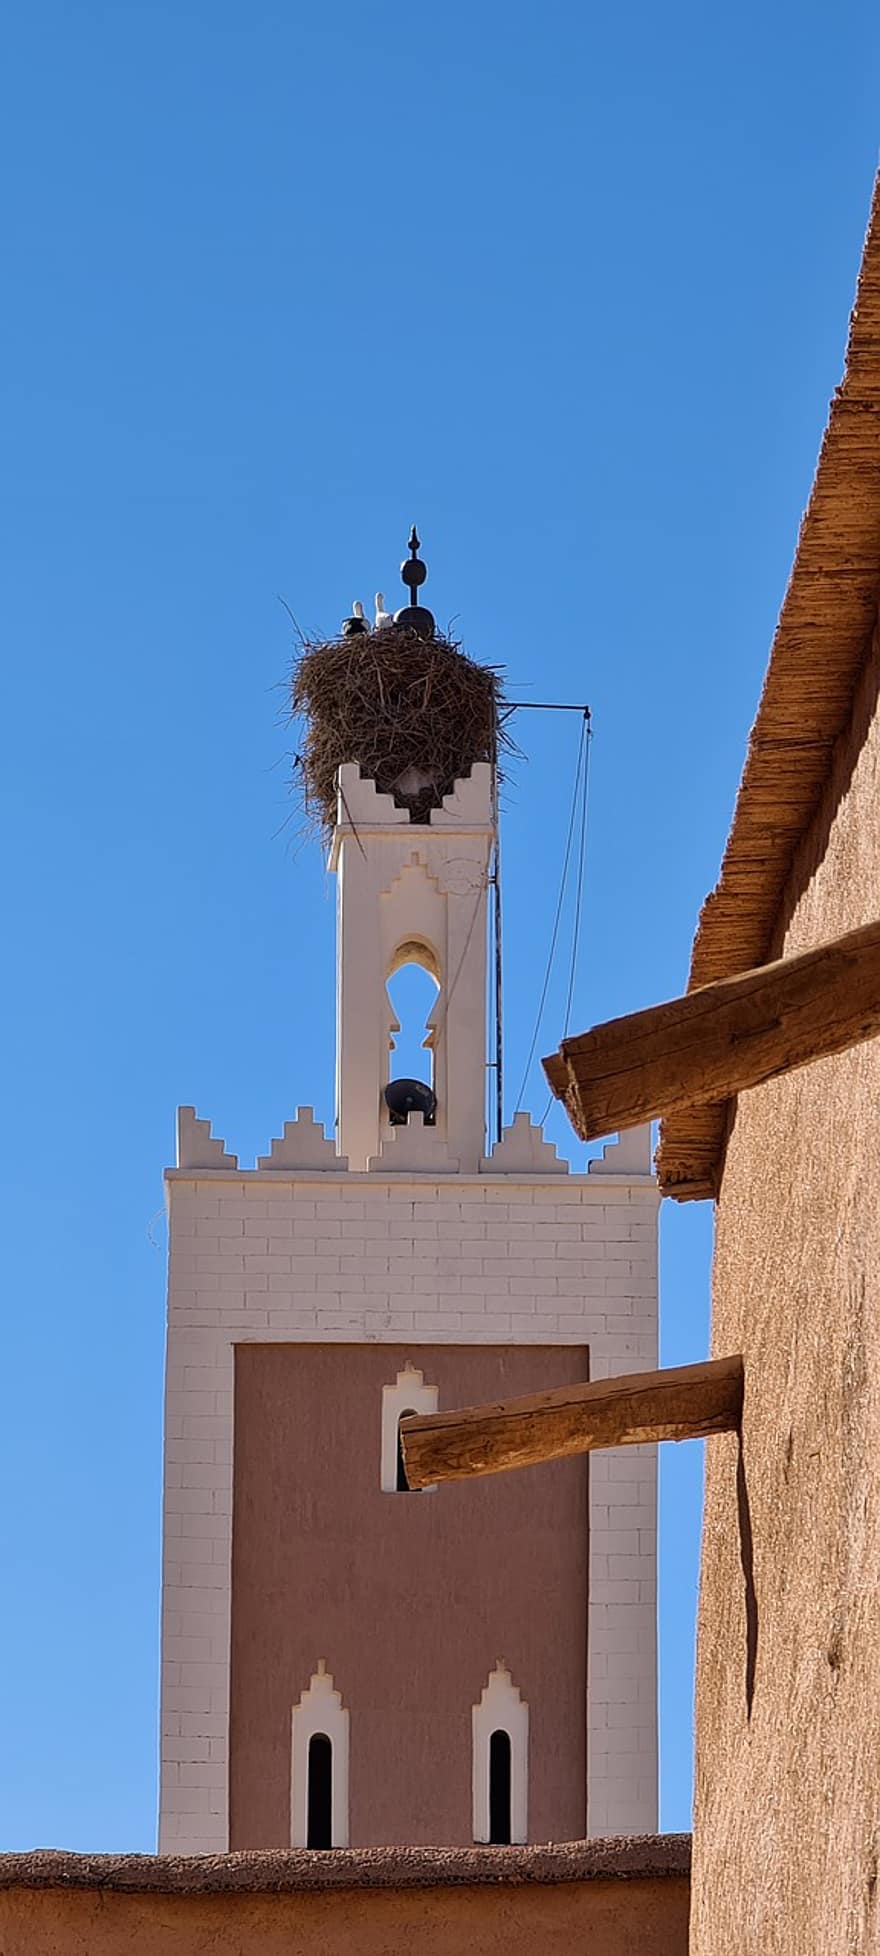 oarazazatas, Maroko, architektūra, krikščionybė, religija, kultūros, istorija, žinoma vieta, senas, pastatyta struktūra, pastato išorė